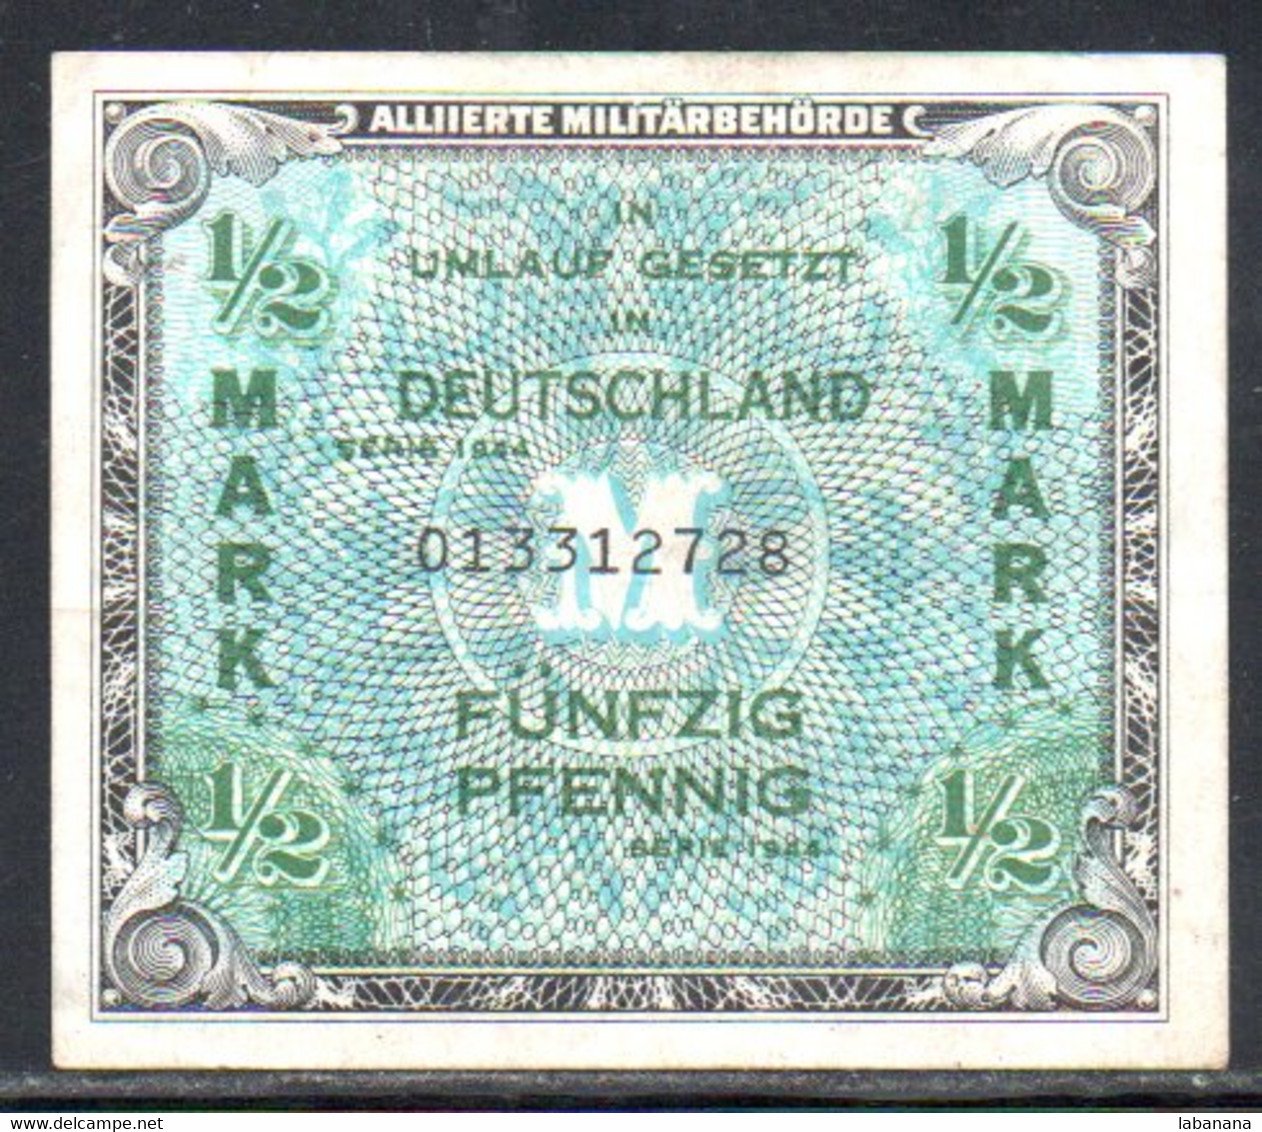 659-Allemagne 1/2m 1944-013 - 1/2 Mark